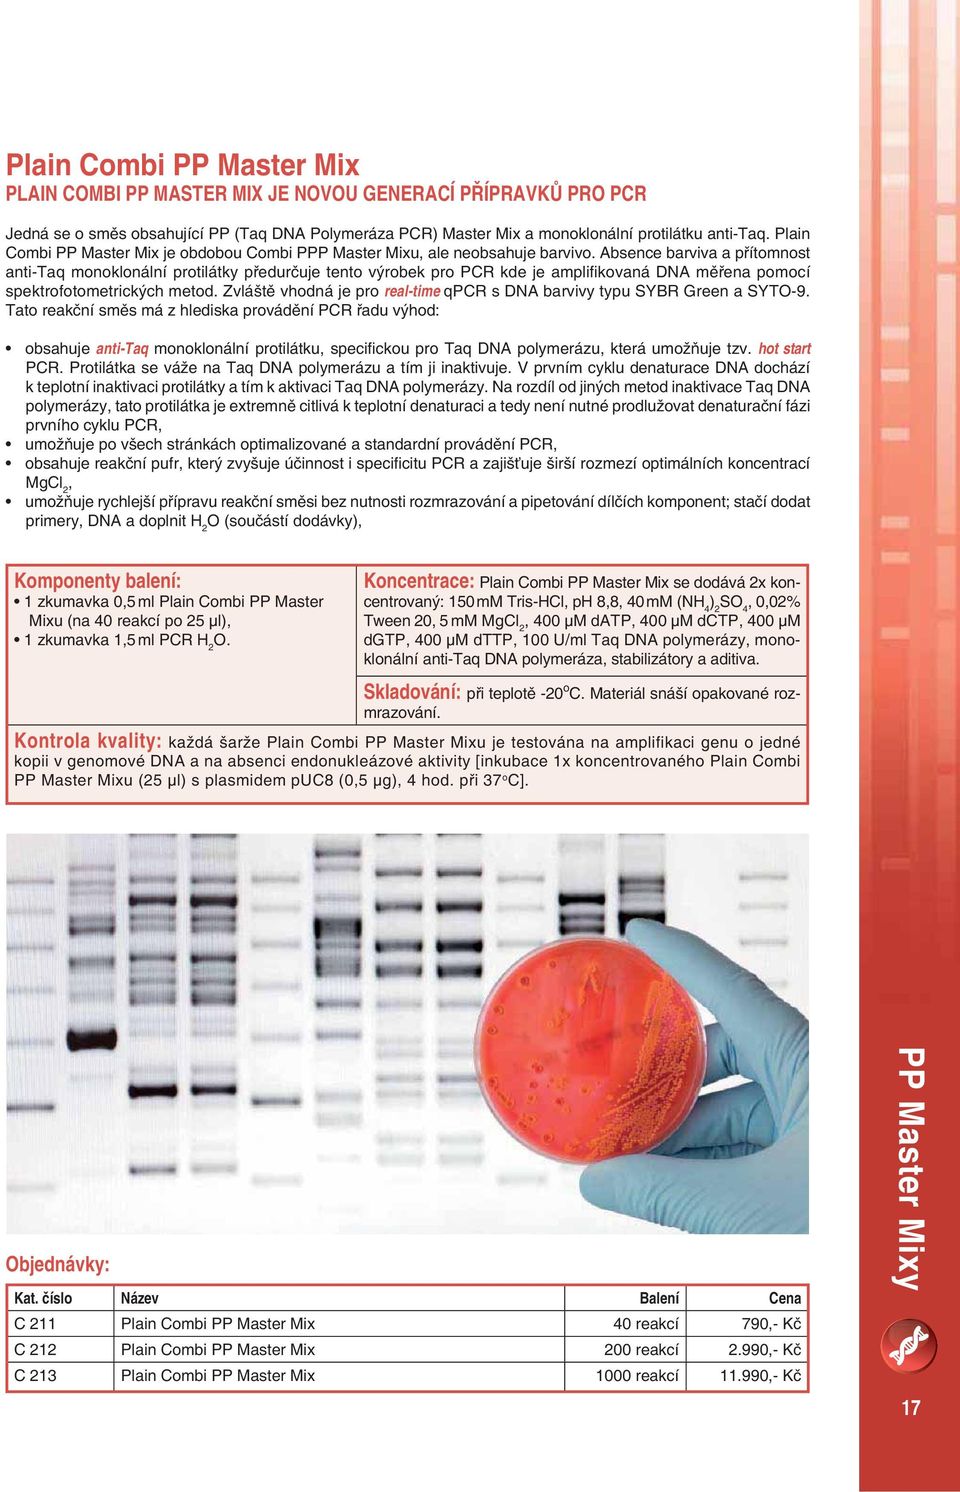 Absence barviva a p ítomnost antitaq monoklonální protilátky p edur uje tento výrobek pro PCR kde je ampli kovaná DNA m ena pomocí spektrofotometrických metod.